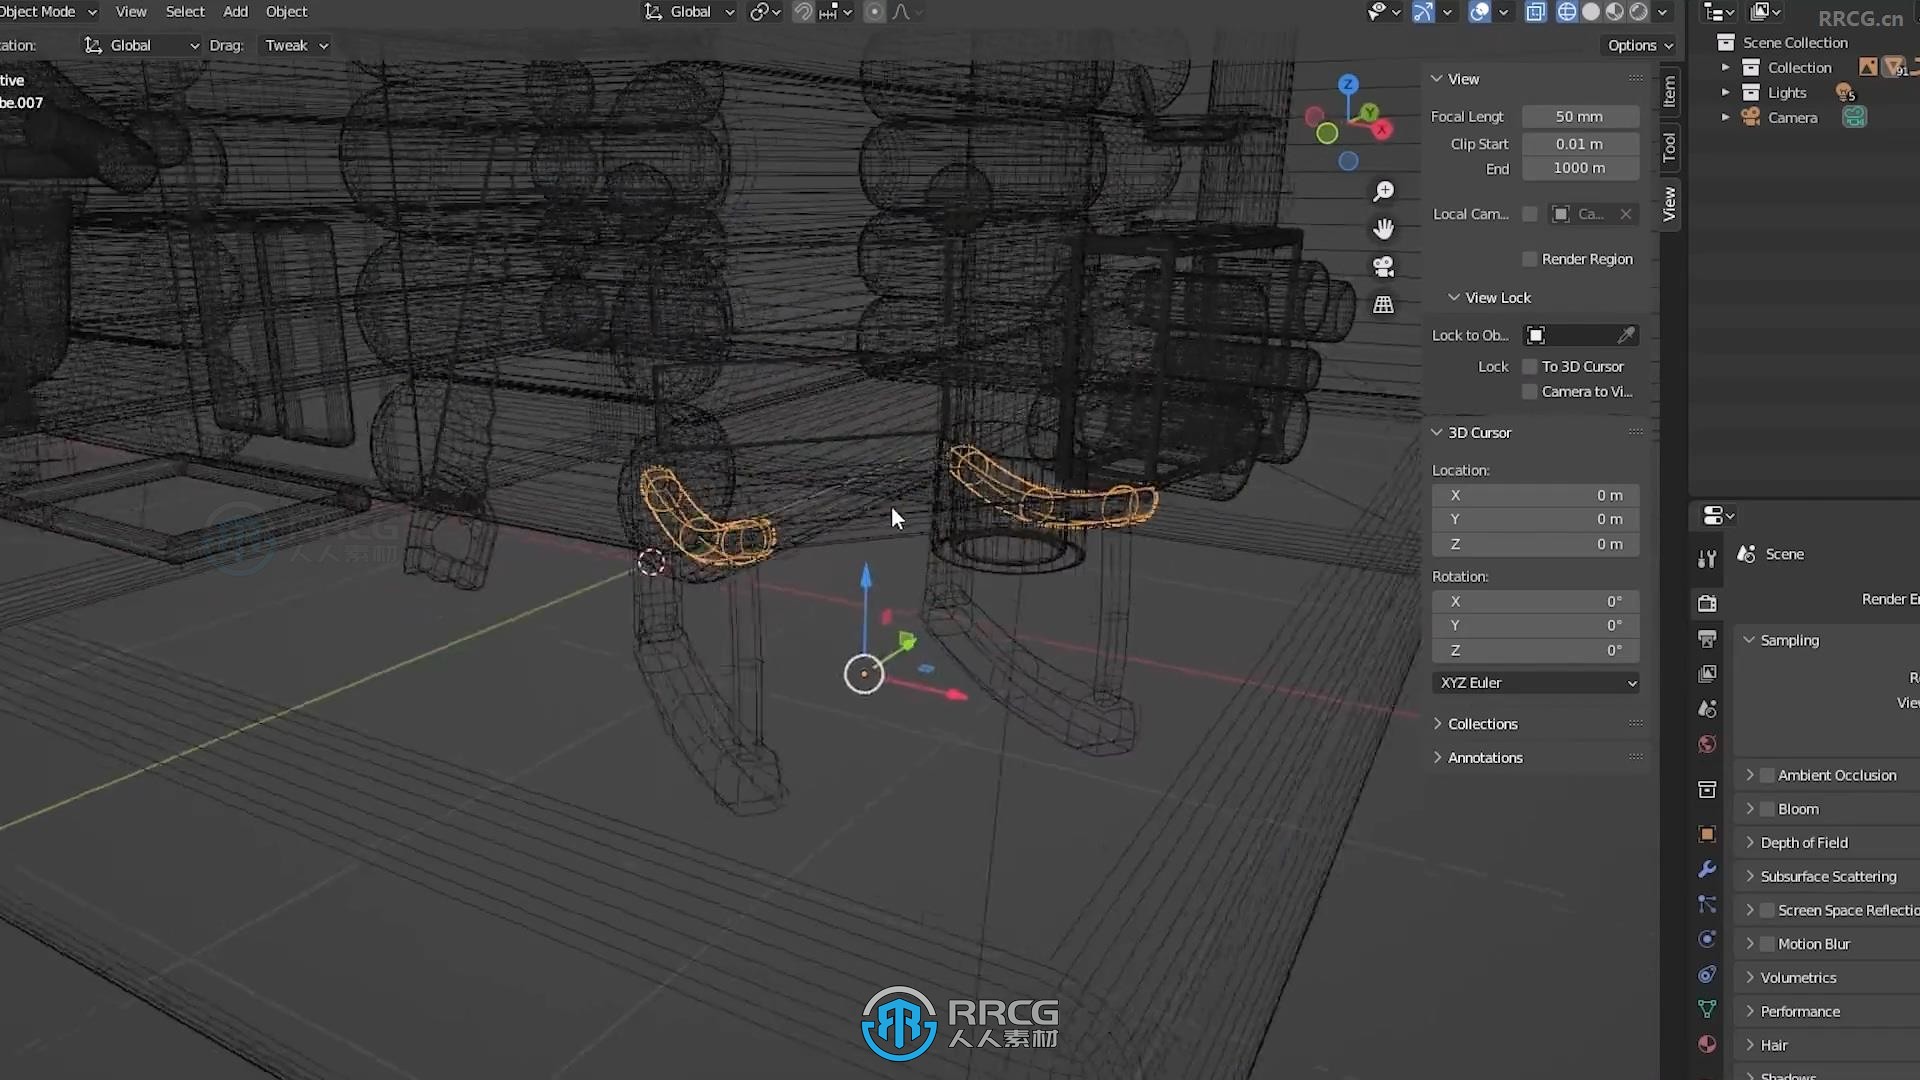 Blender三维场景建模完全指南视频教程